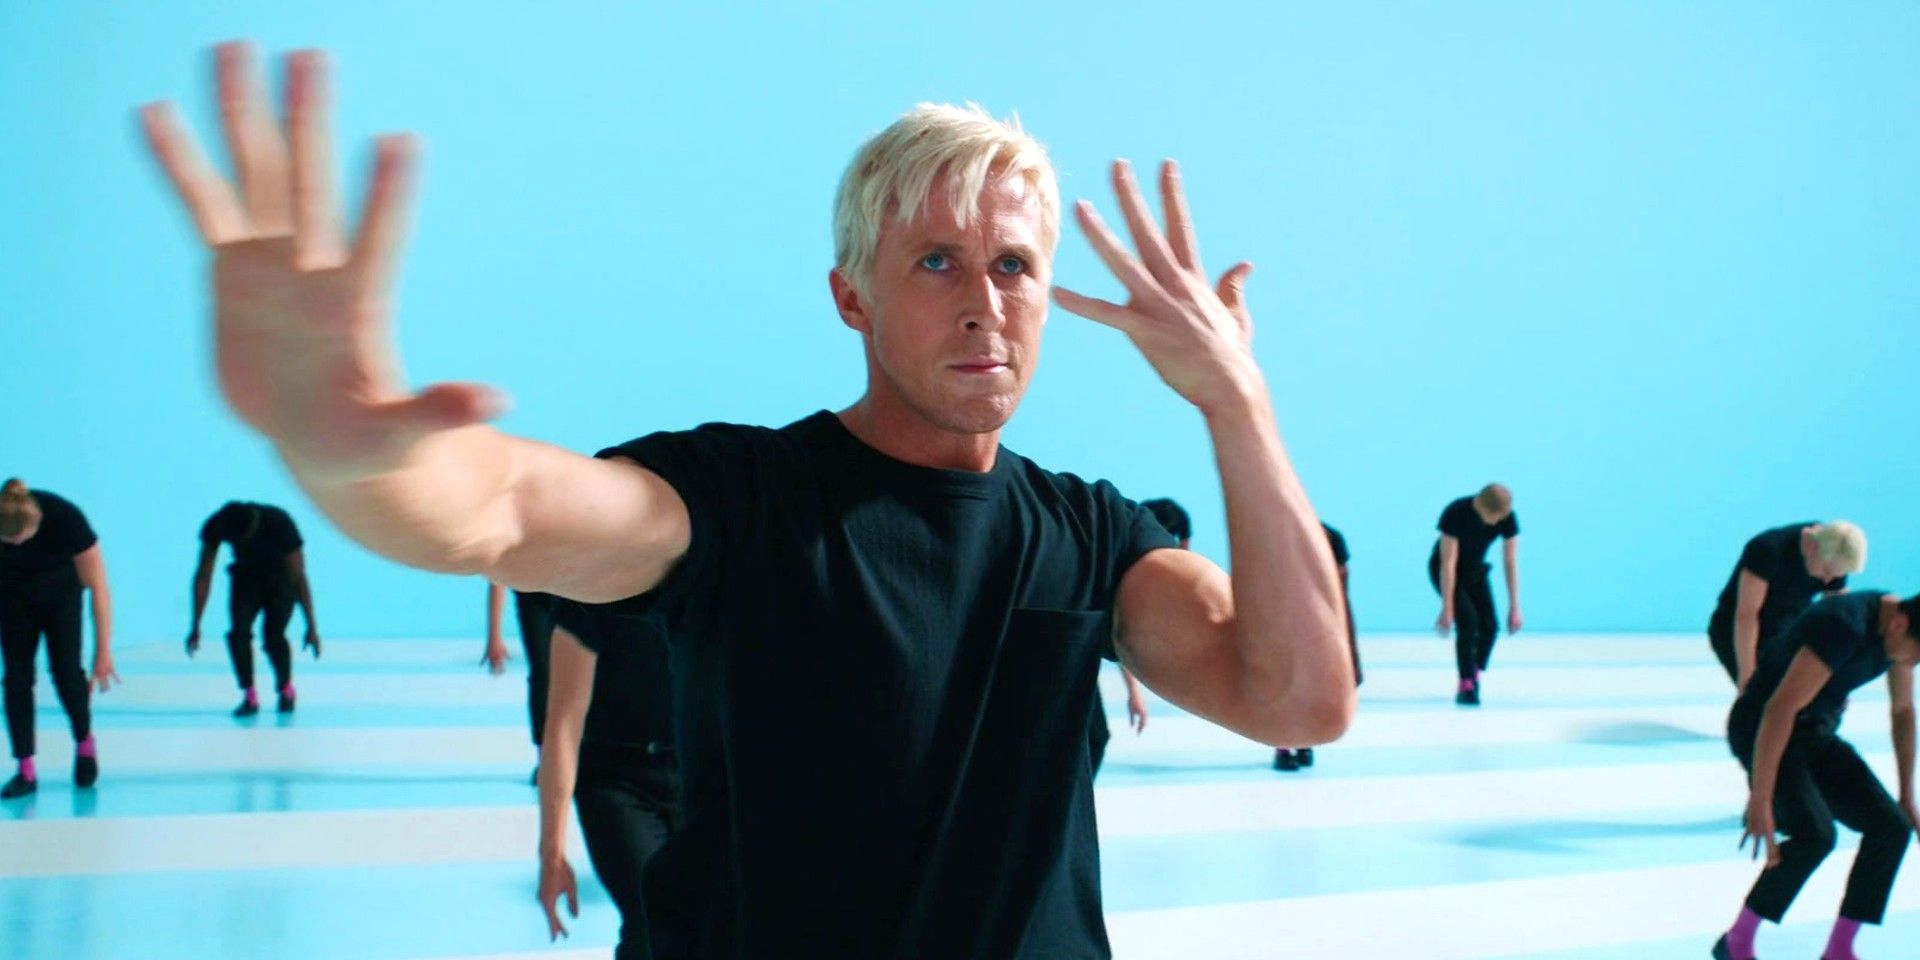 "I'm Just Ken" de Barbie obtiene un toque navideño con Ryan Gosling interpretando una canción viral en un nuevo video